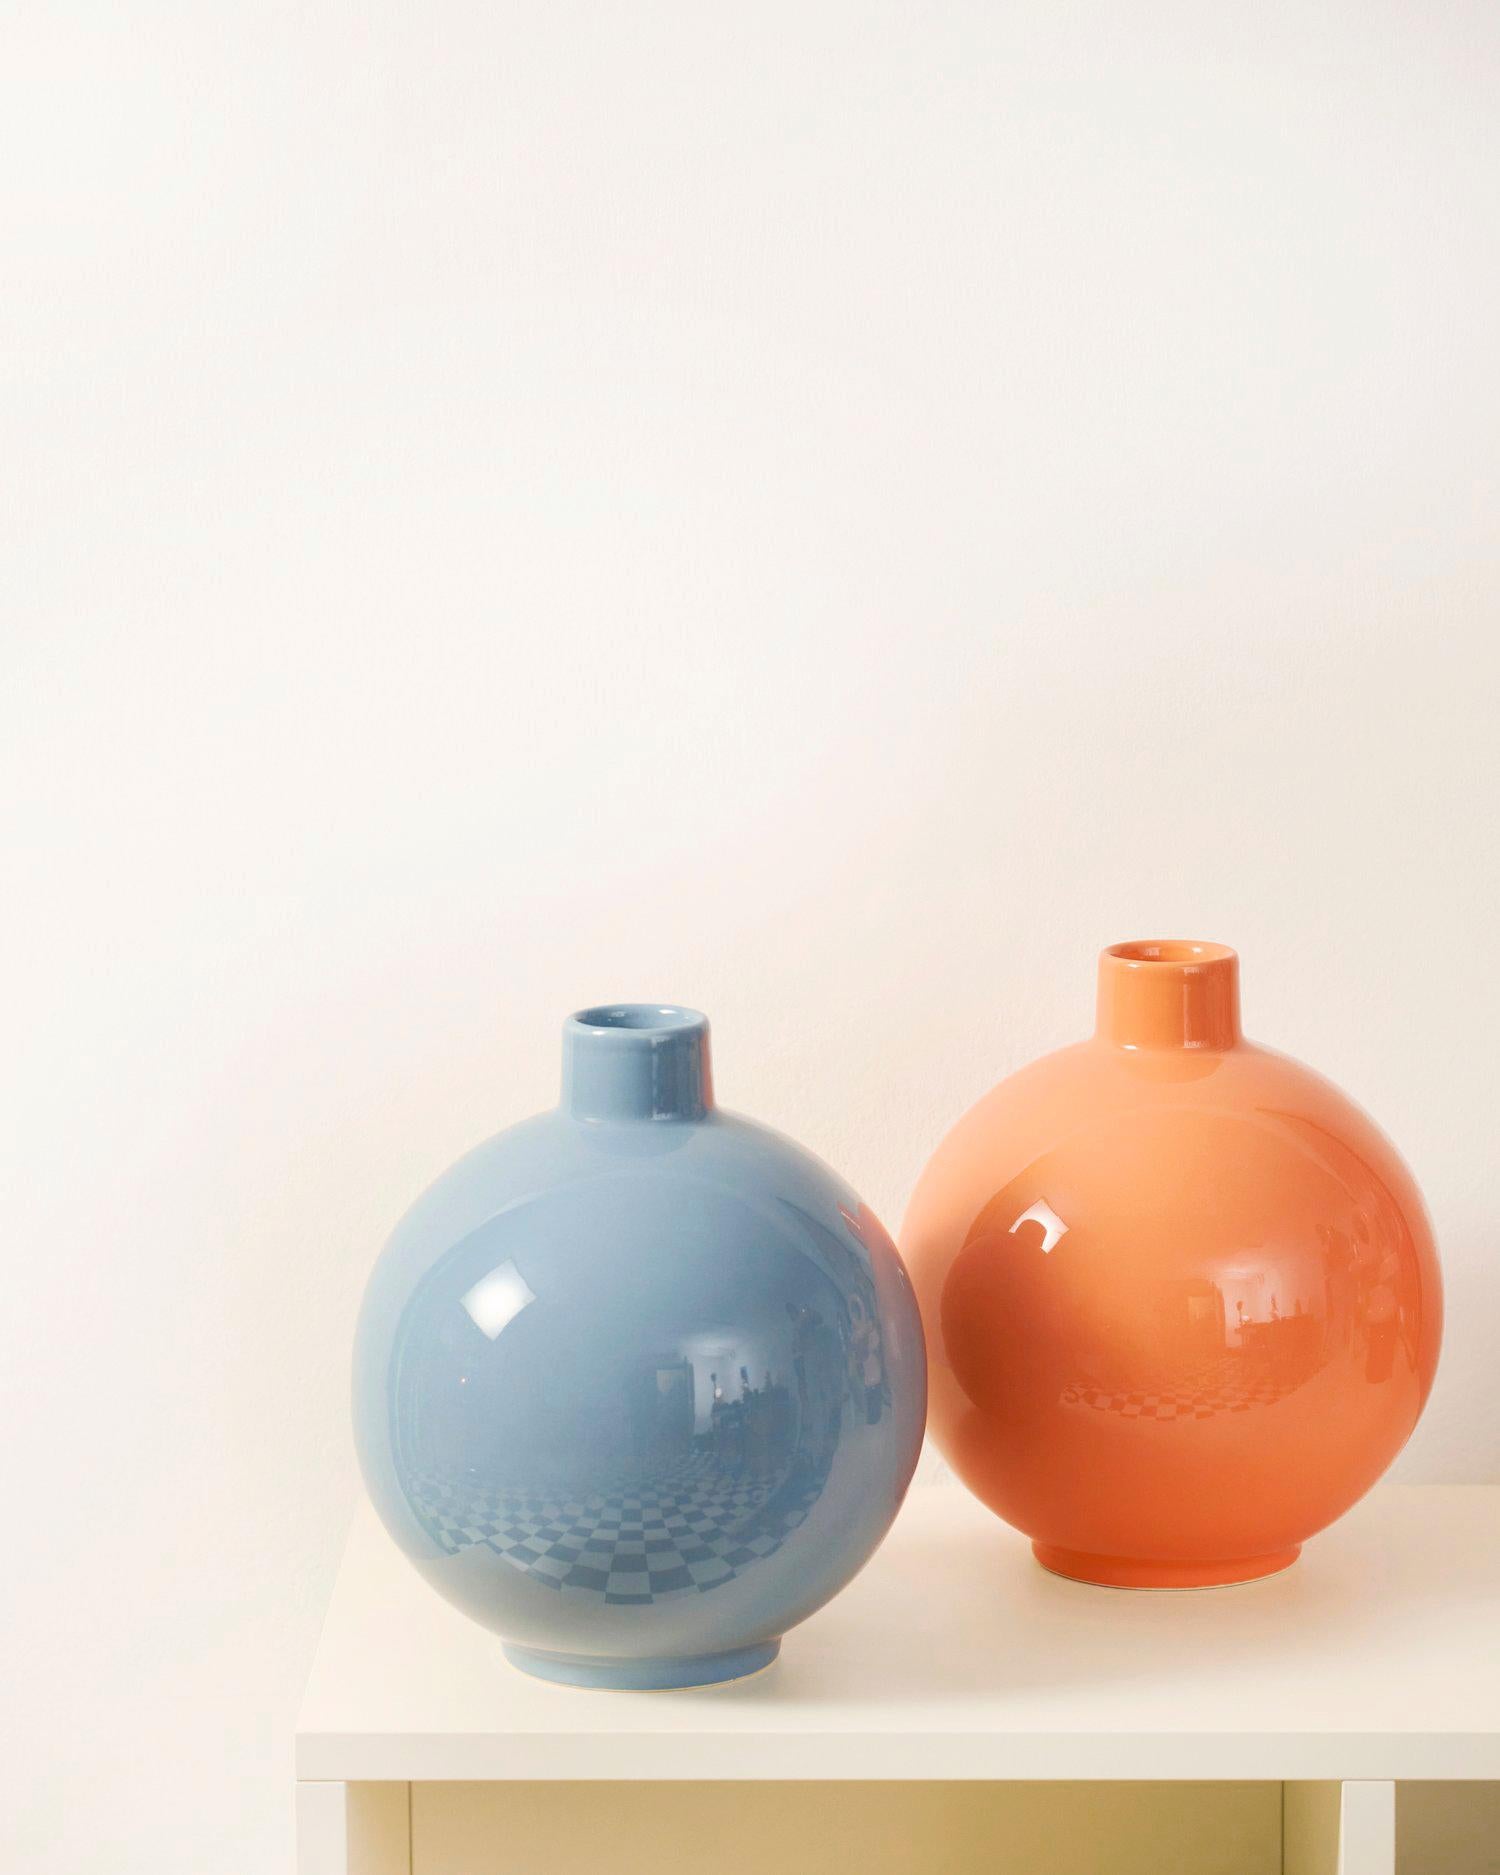 IRENA hat eine einfache, kompakte, kugelförmige Form mit einem kurzen zylindrischen Hals. Die Vase besteht aus edler Keramik und ist in ihrer klassischen und voll funktionsfähigen Form eine künstlerische Ergänzung der Inneneinrichtung. 